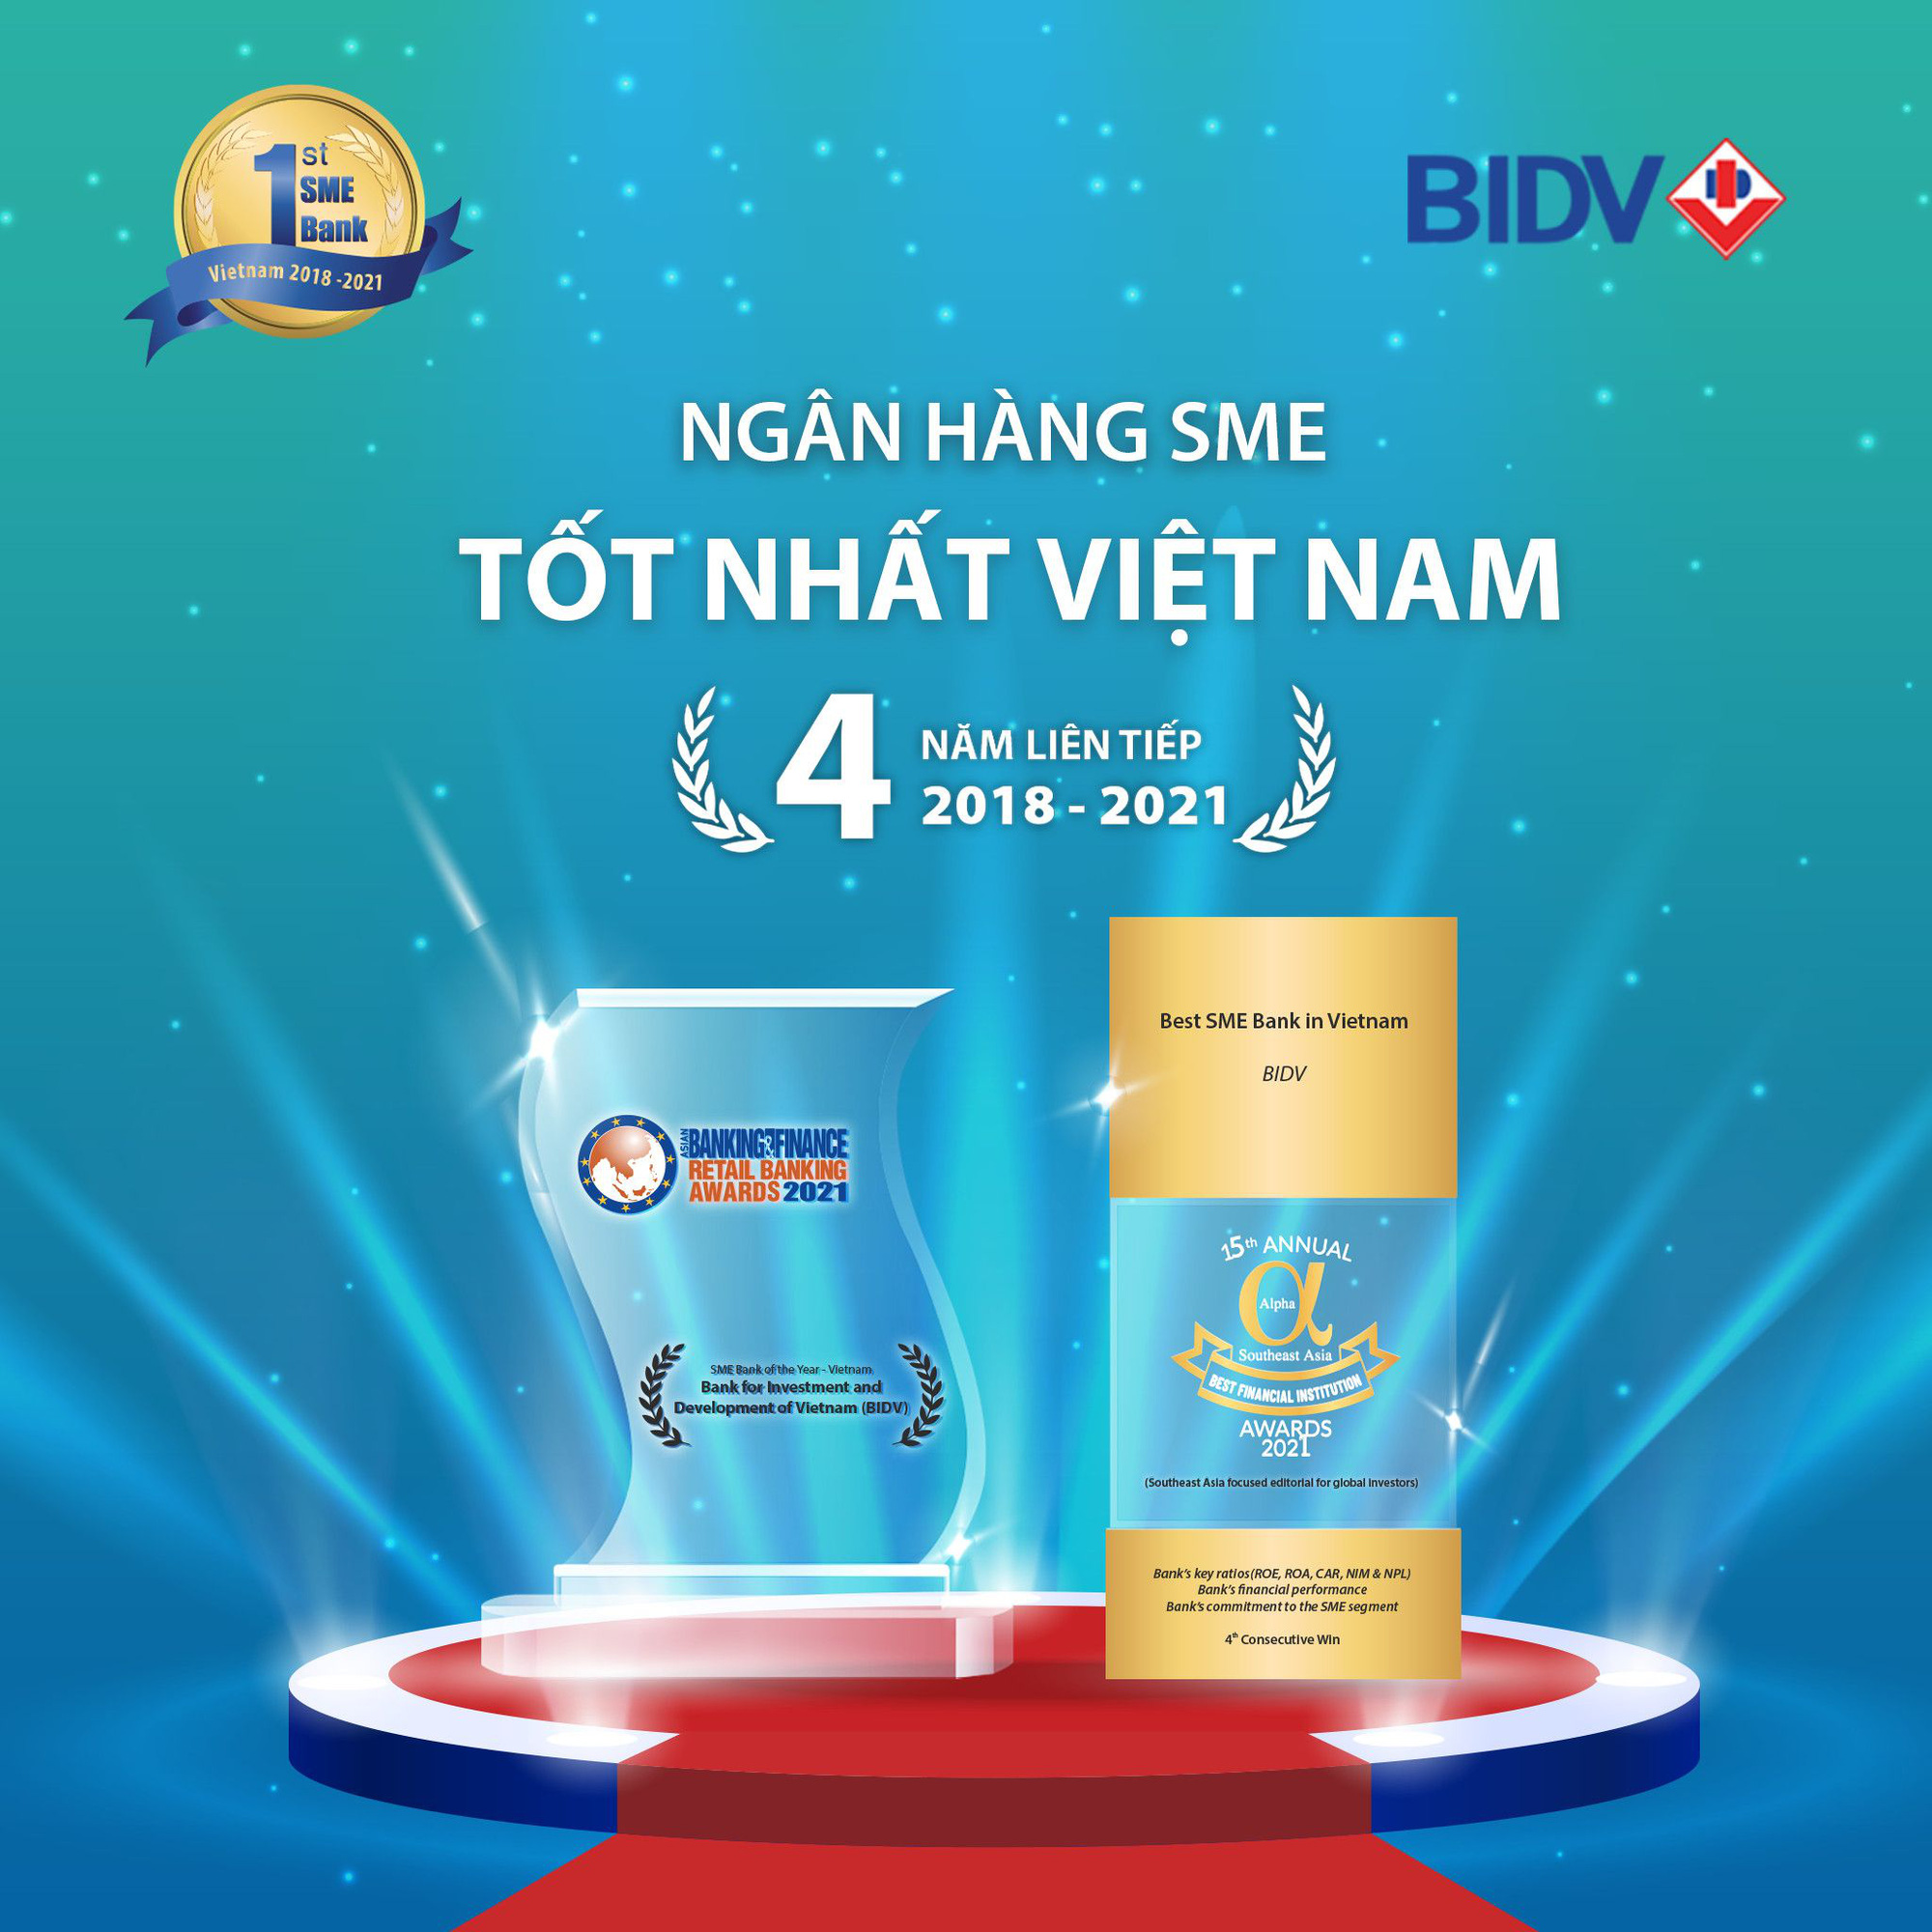 BIDV nhận cú đúp giải thưởng “Ngân hàng SME tốt nhất Việt Nam” - Ảnh 1.